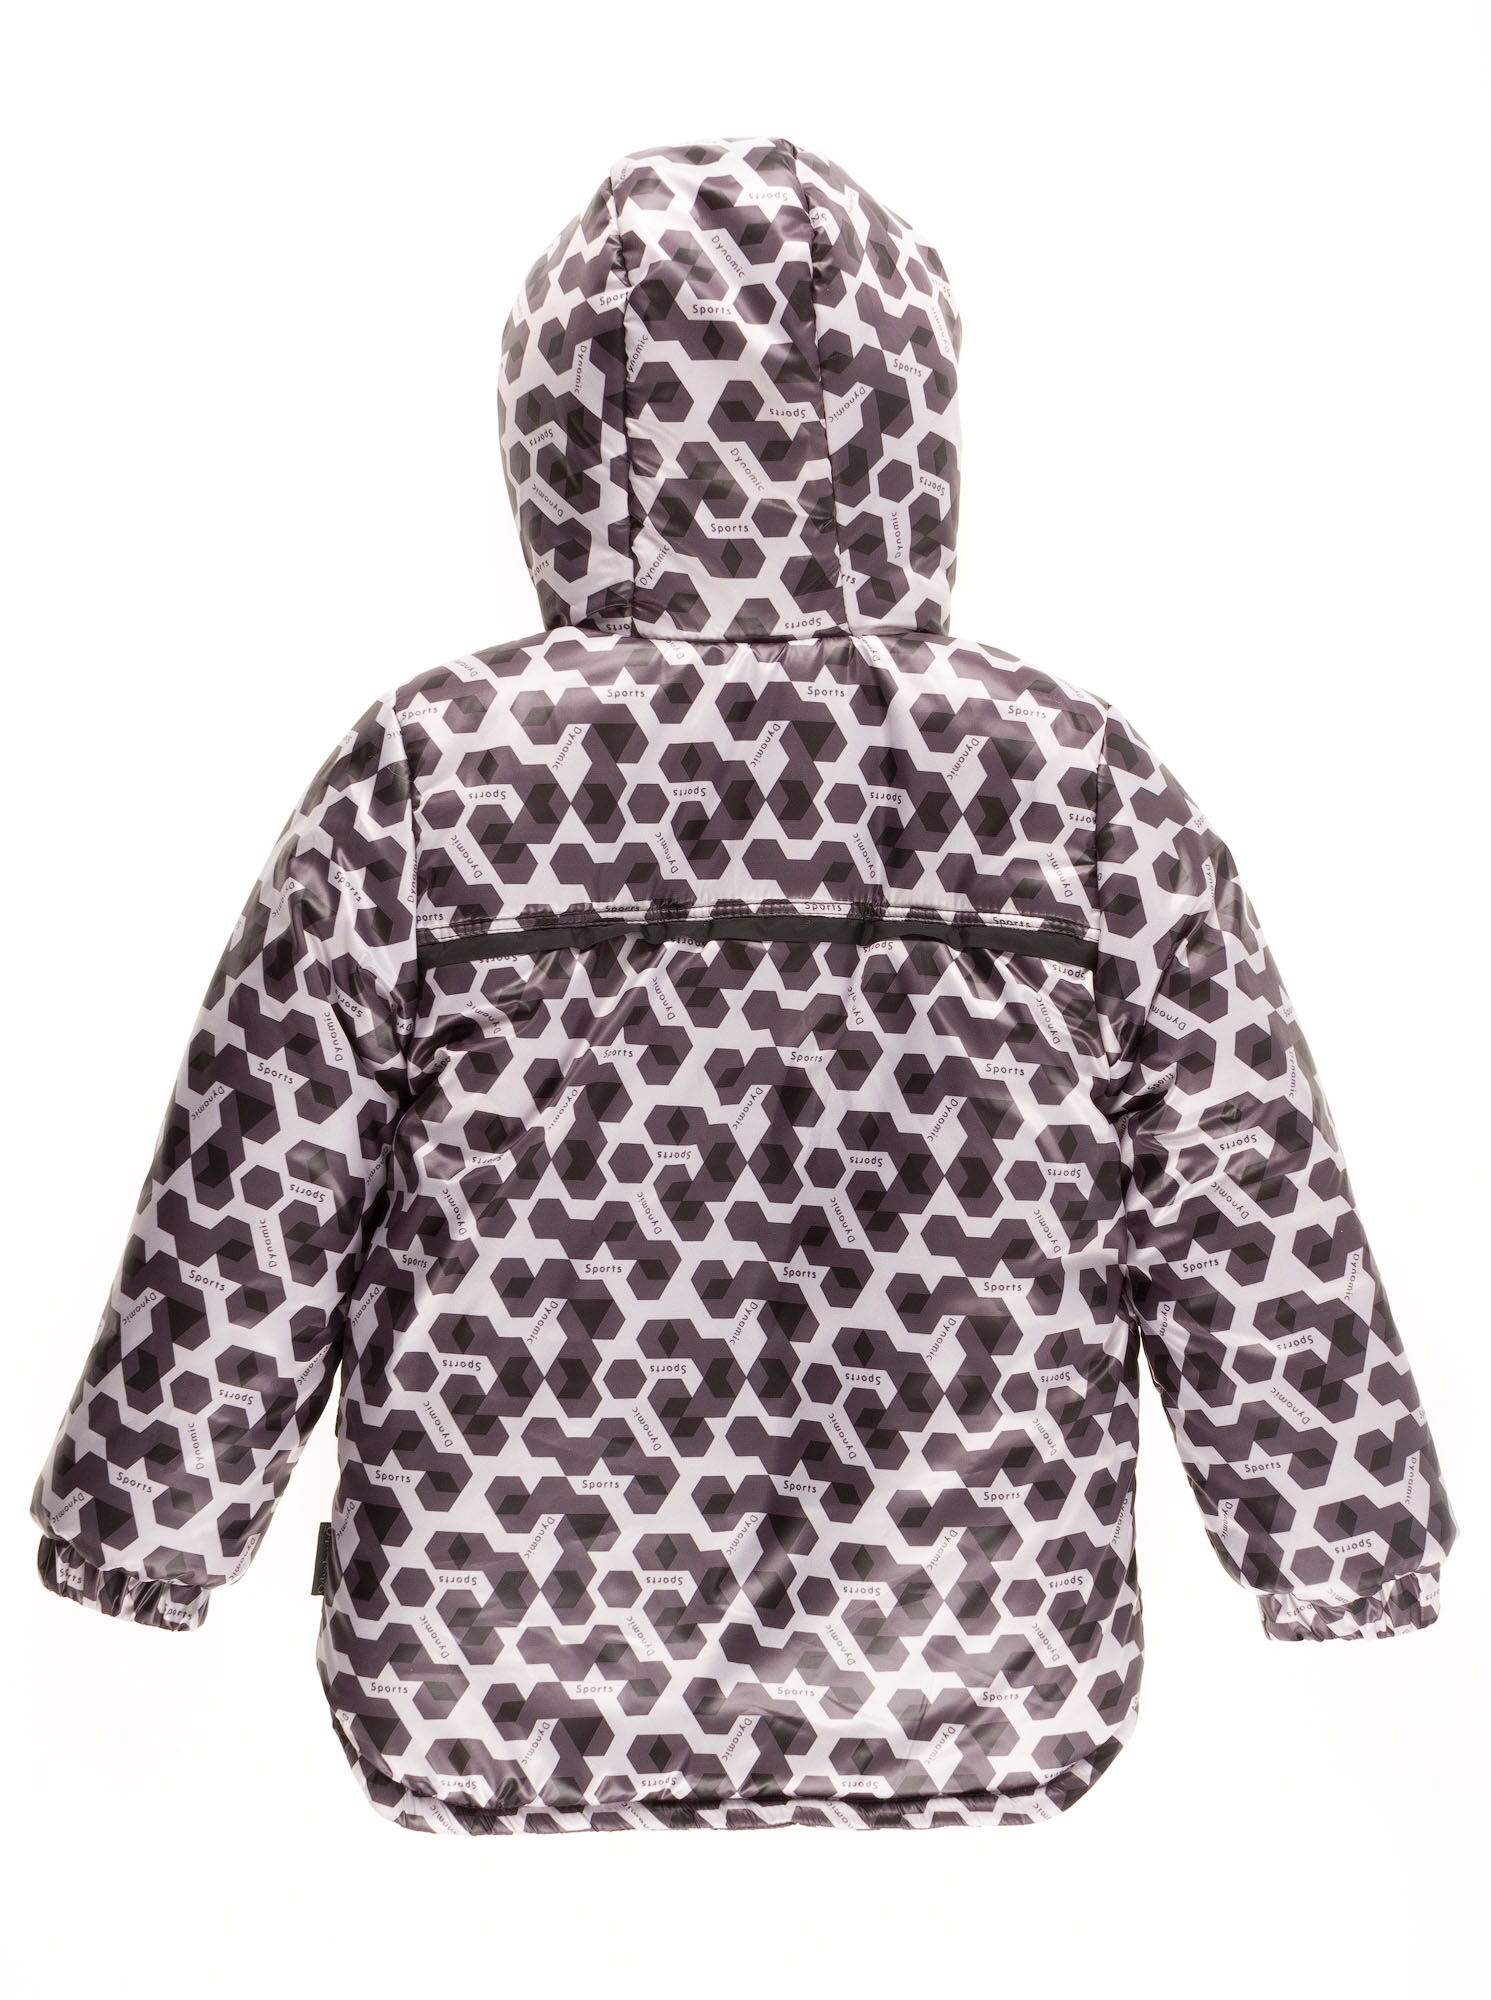 Комбинезон зимний раздельный для мальчика (куртка+штаны) Одягайко геометрия черный 20088+01241О - фотография